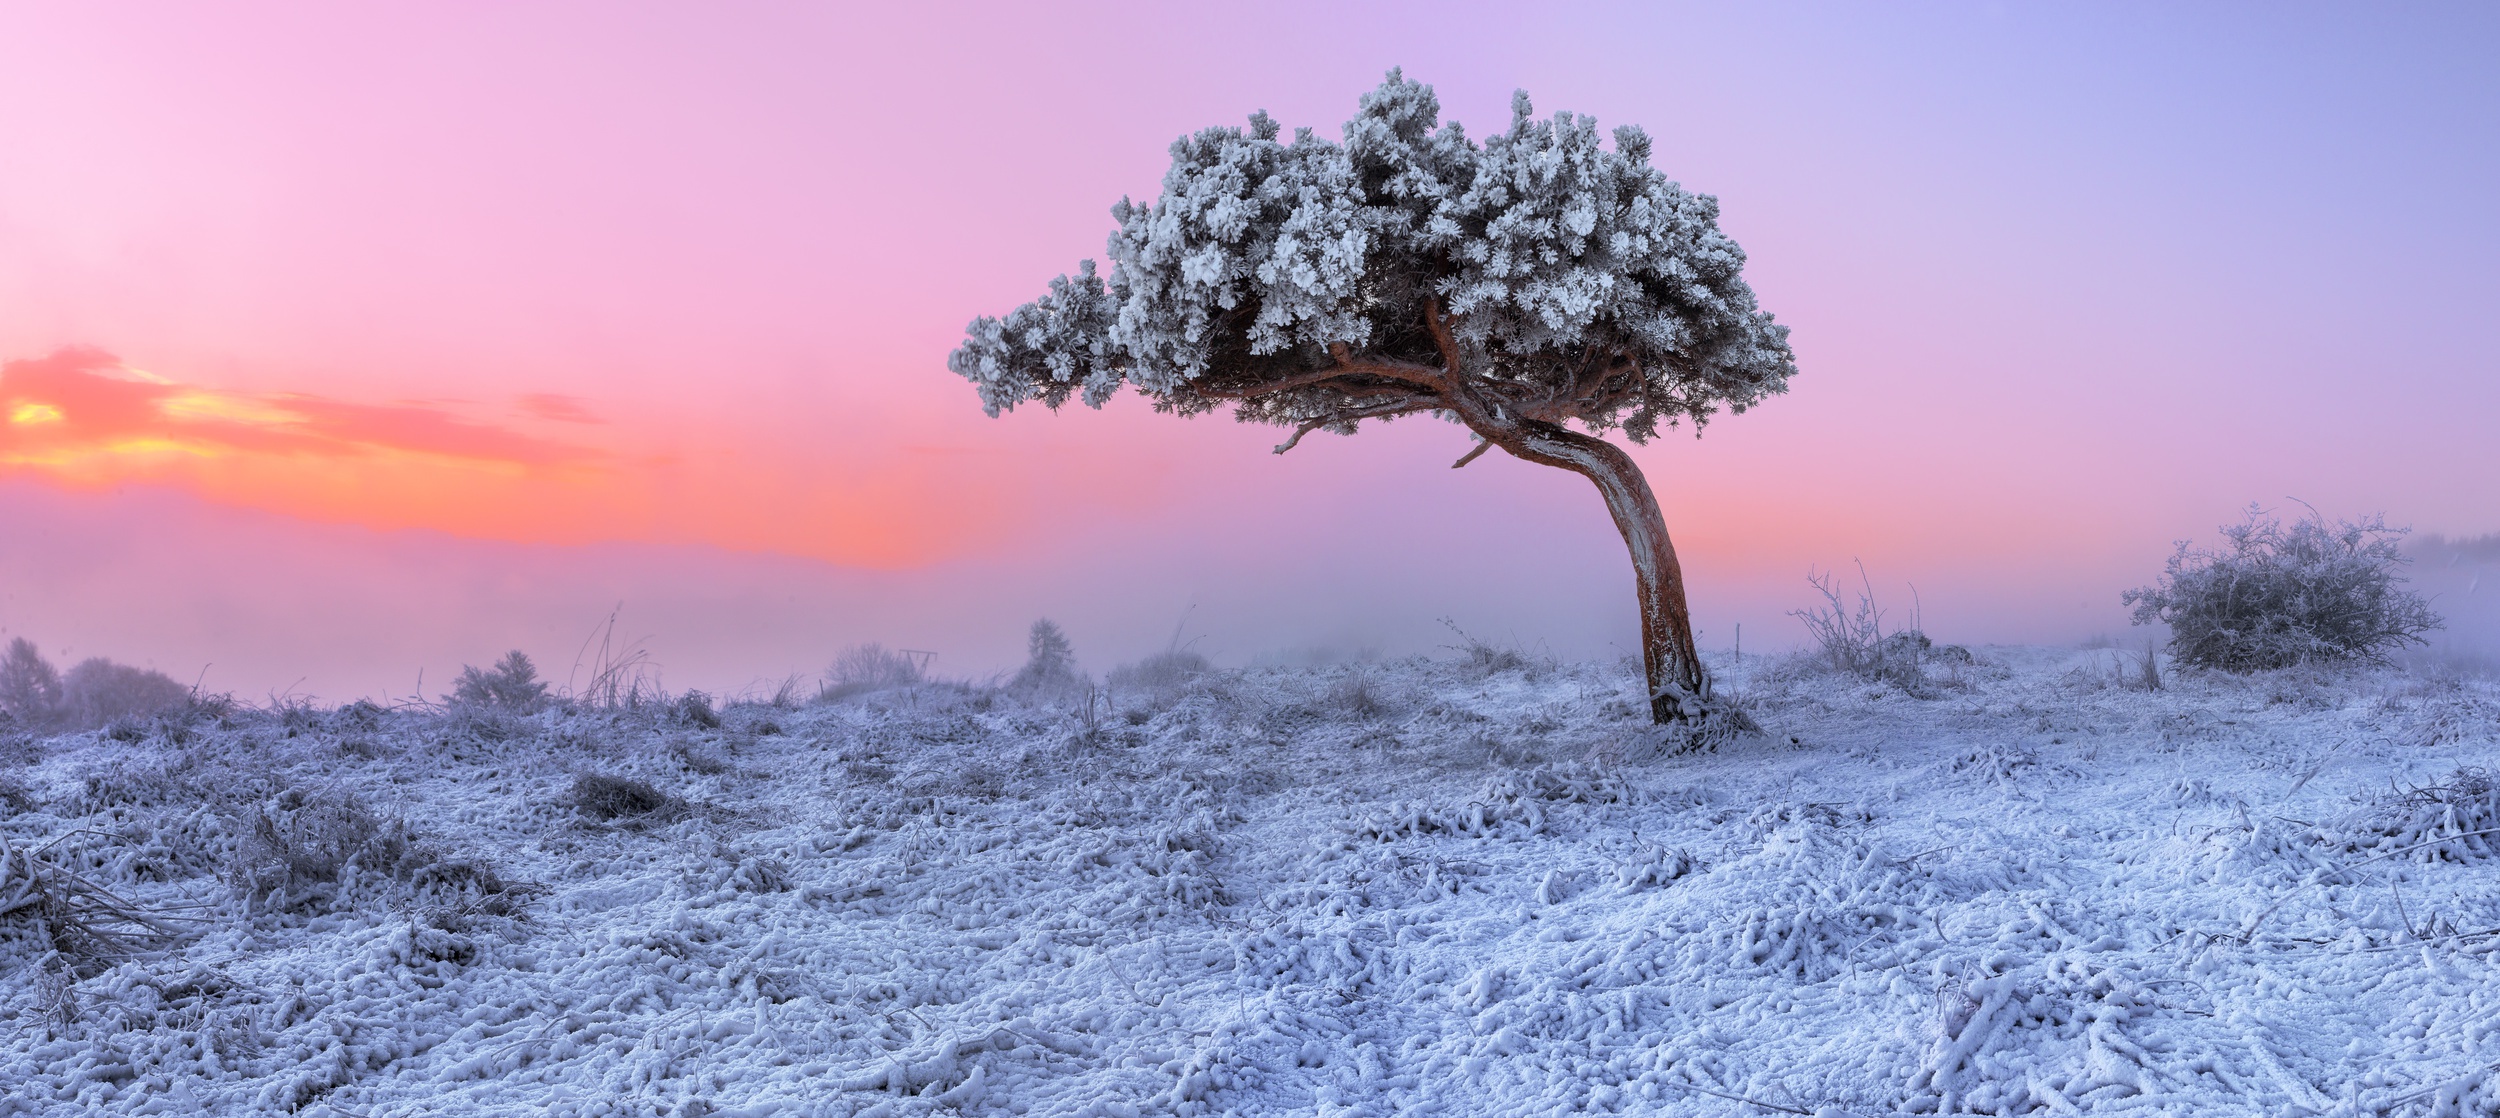 Идешь зимой по полю тишина. Деревья в снегу. Одинокое дерево в снегу. Заснеженные деревья. Иней на деревьях.